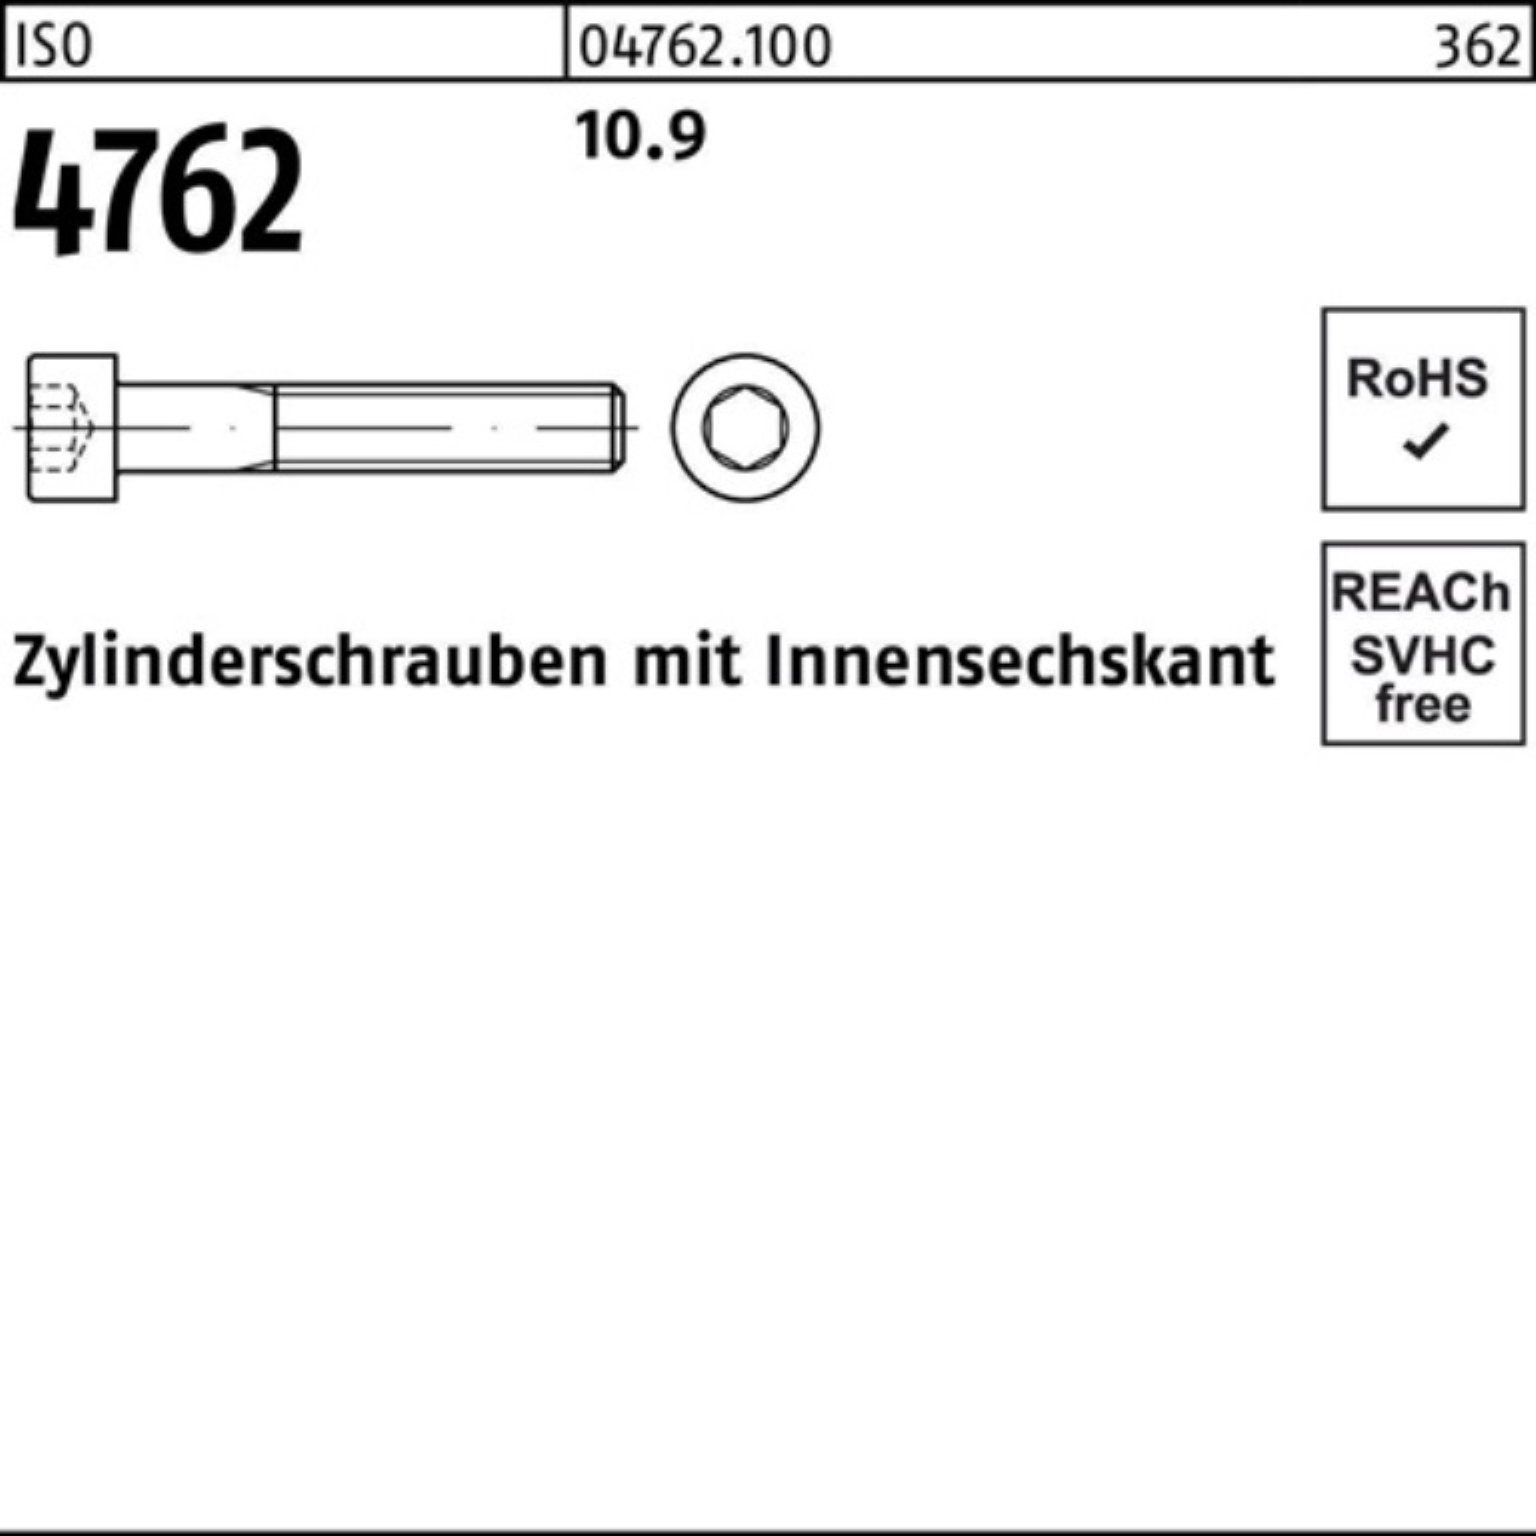 125 Innen-6kt Pack 50 10.9 ISO Stück 100er Zylinderschraube Reyher Zylinderschraube 4762 M14x